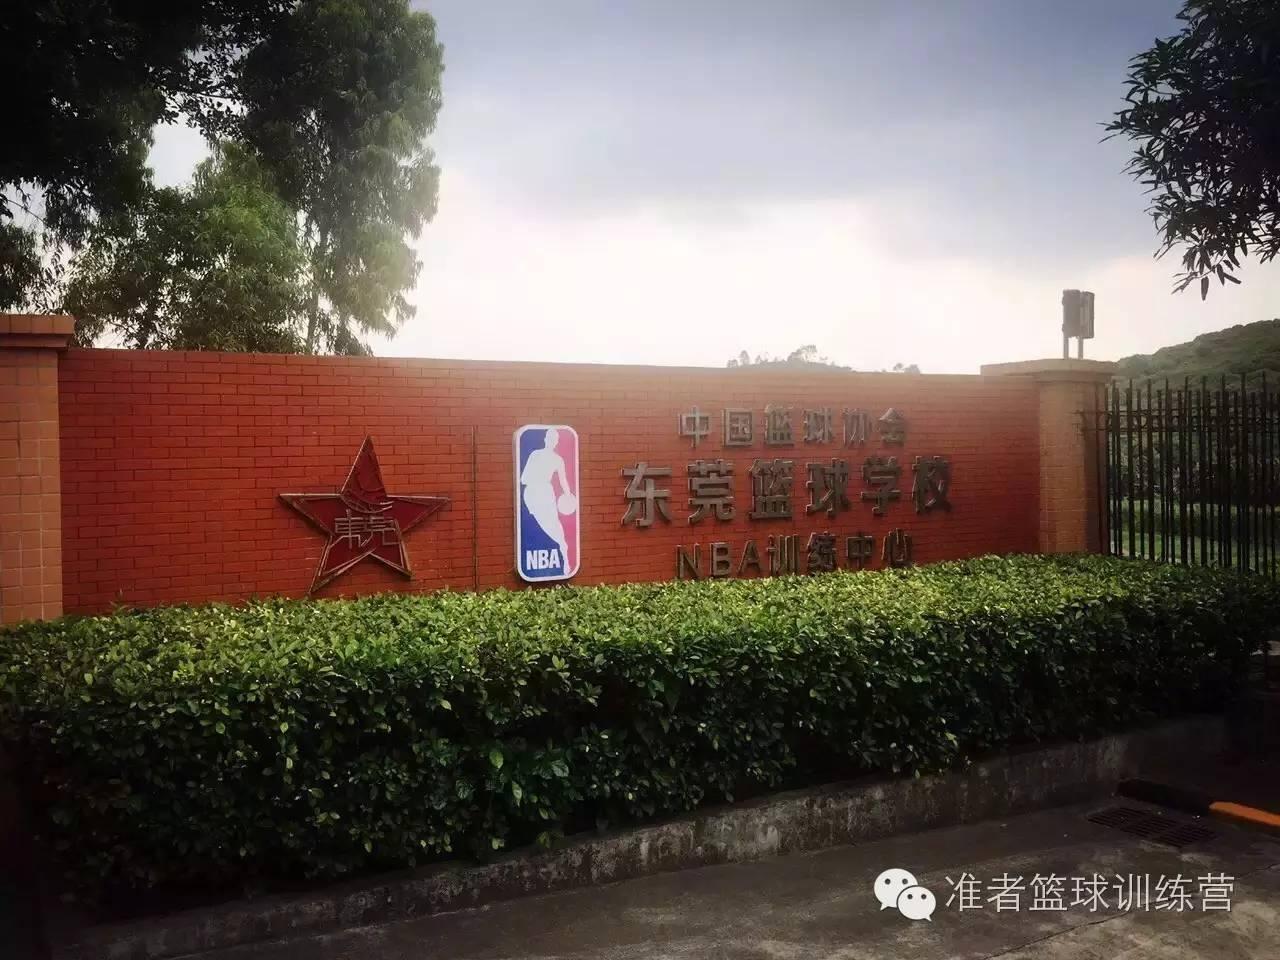 准者体育入驻中国篮球城市—广东东莞,燥起来!